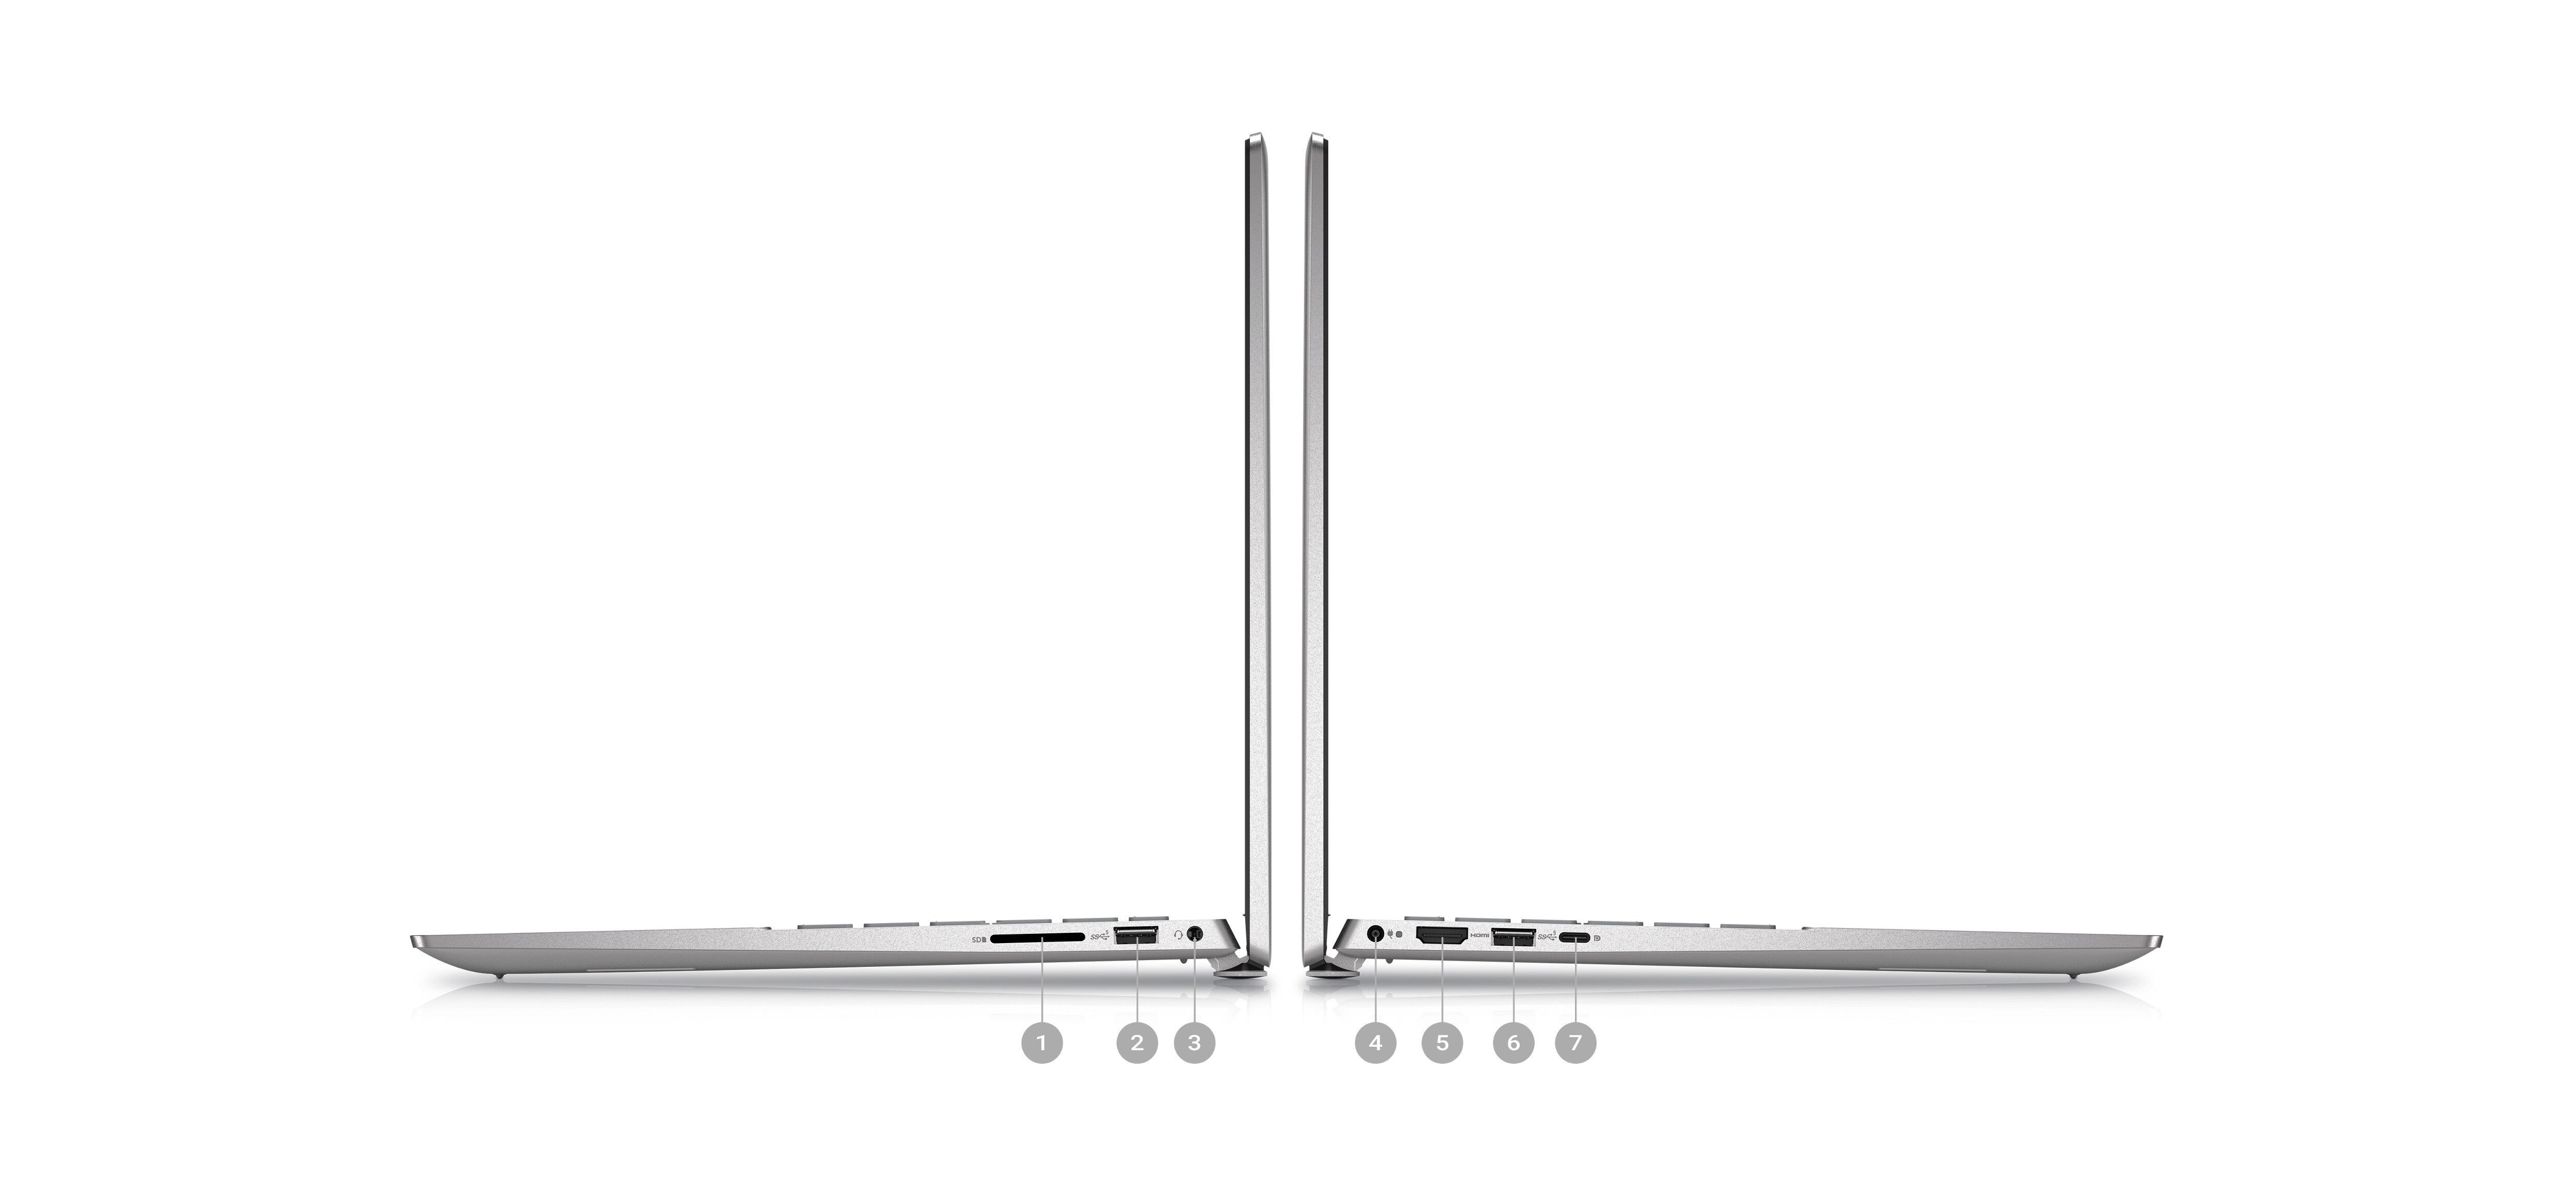 Image de deux ordinateurs portables Dell Inspiron 5425 placés de côté avec des numéros compris entre 1 et 7 signalant les ports des produits.